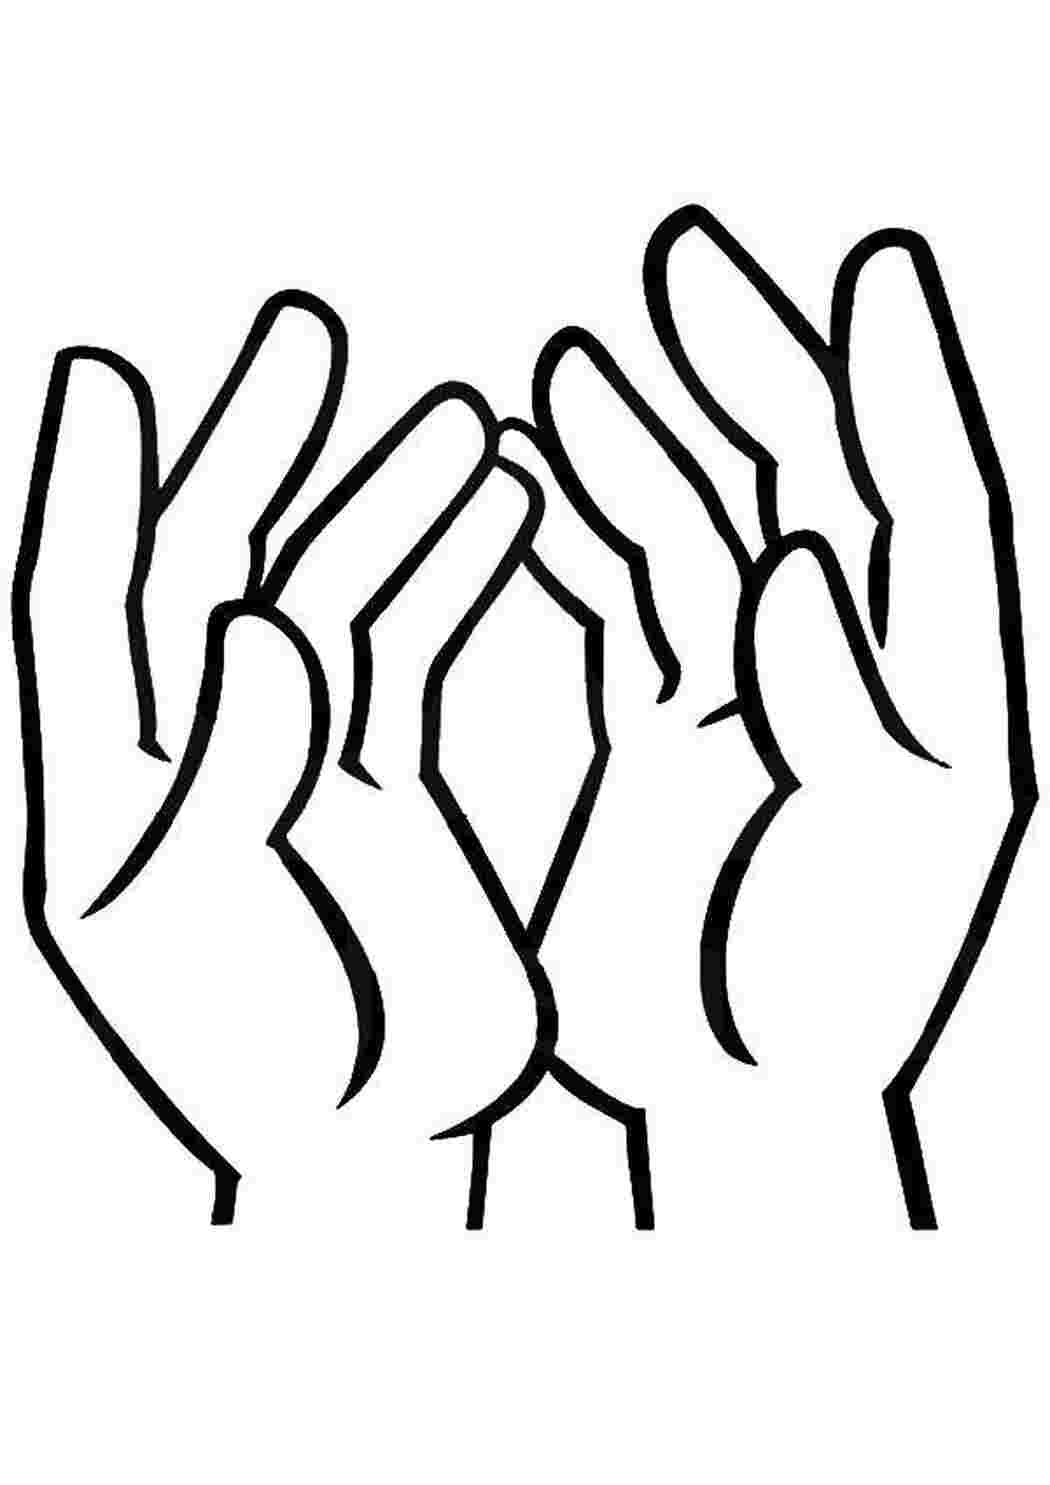 Раскраски Две руки рука пальцы, руки